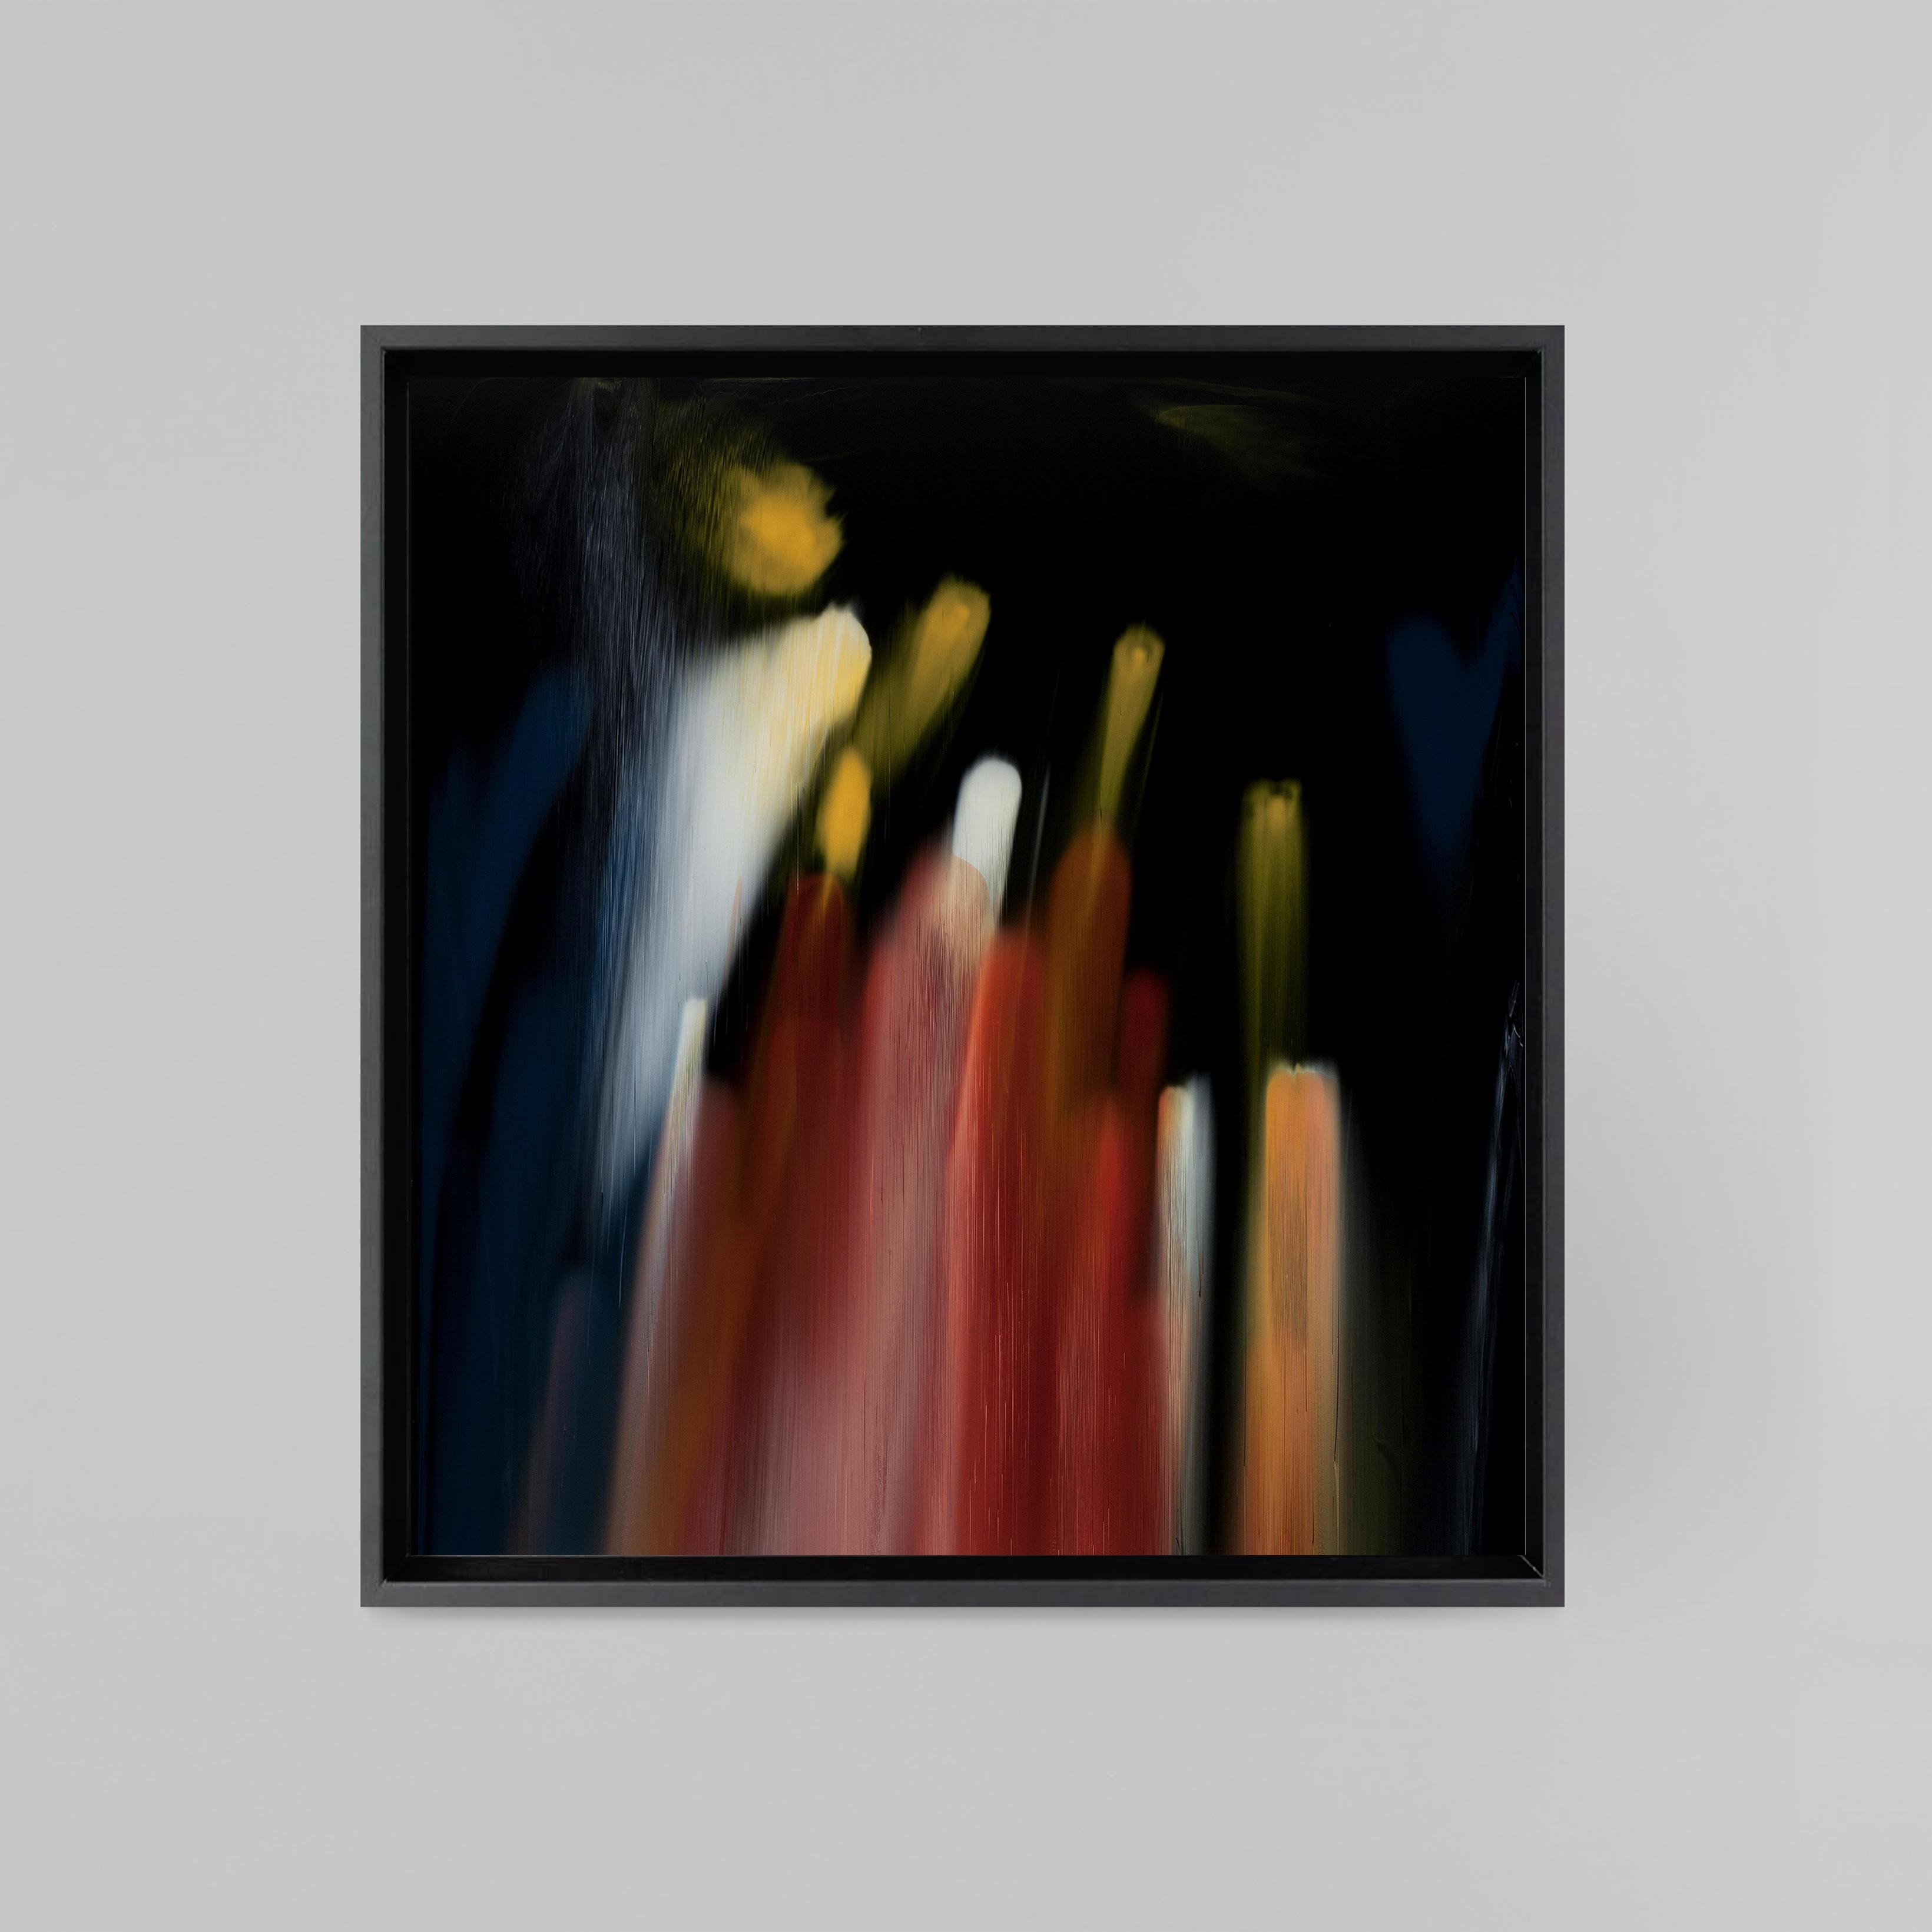 The pentium glitch 
Peinture sur alluminium  
150 x 160 cm